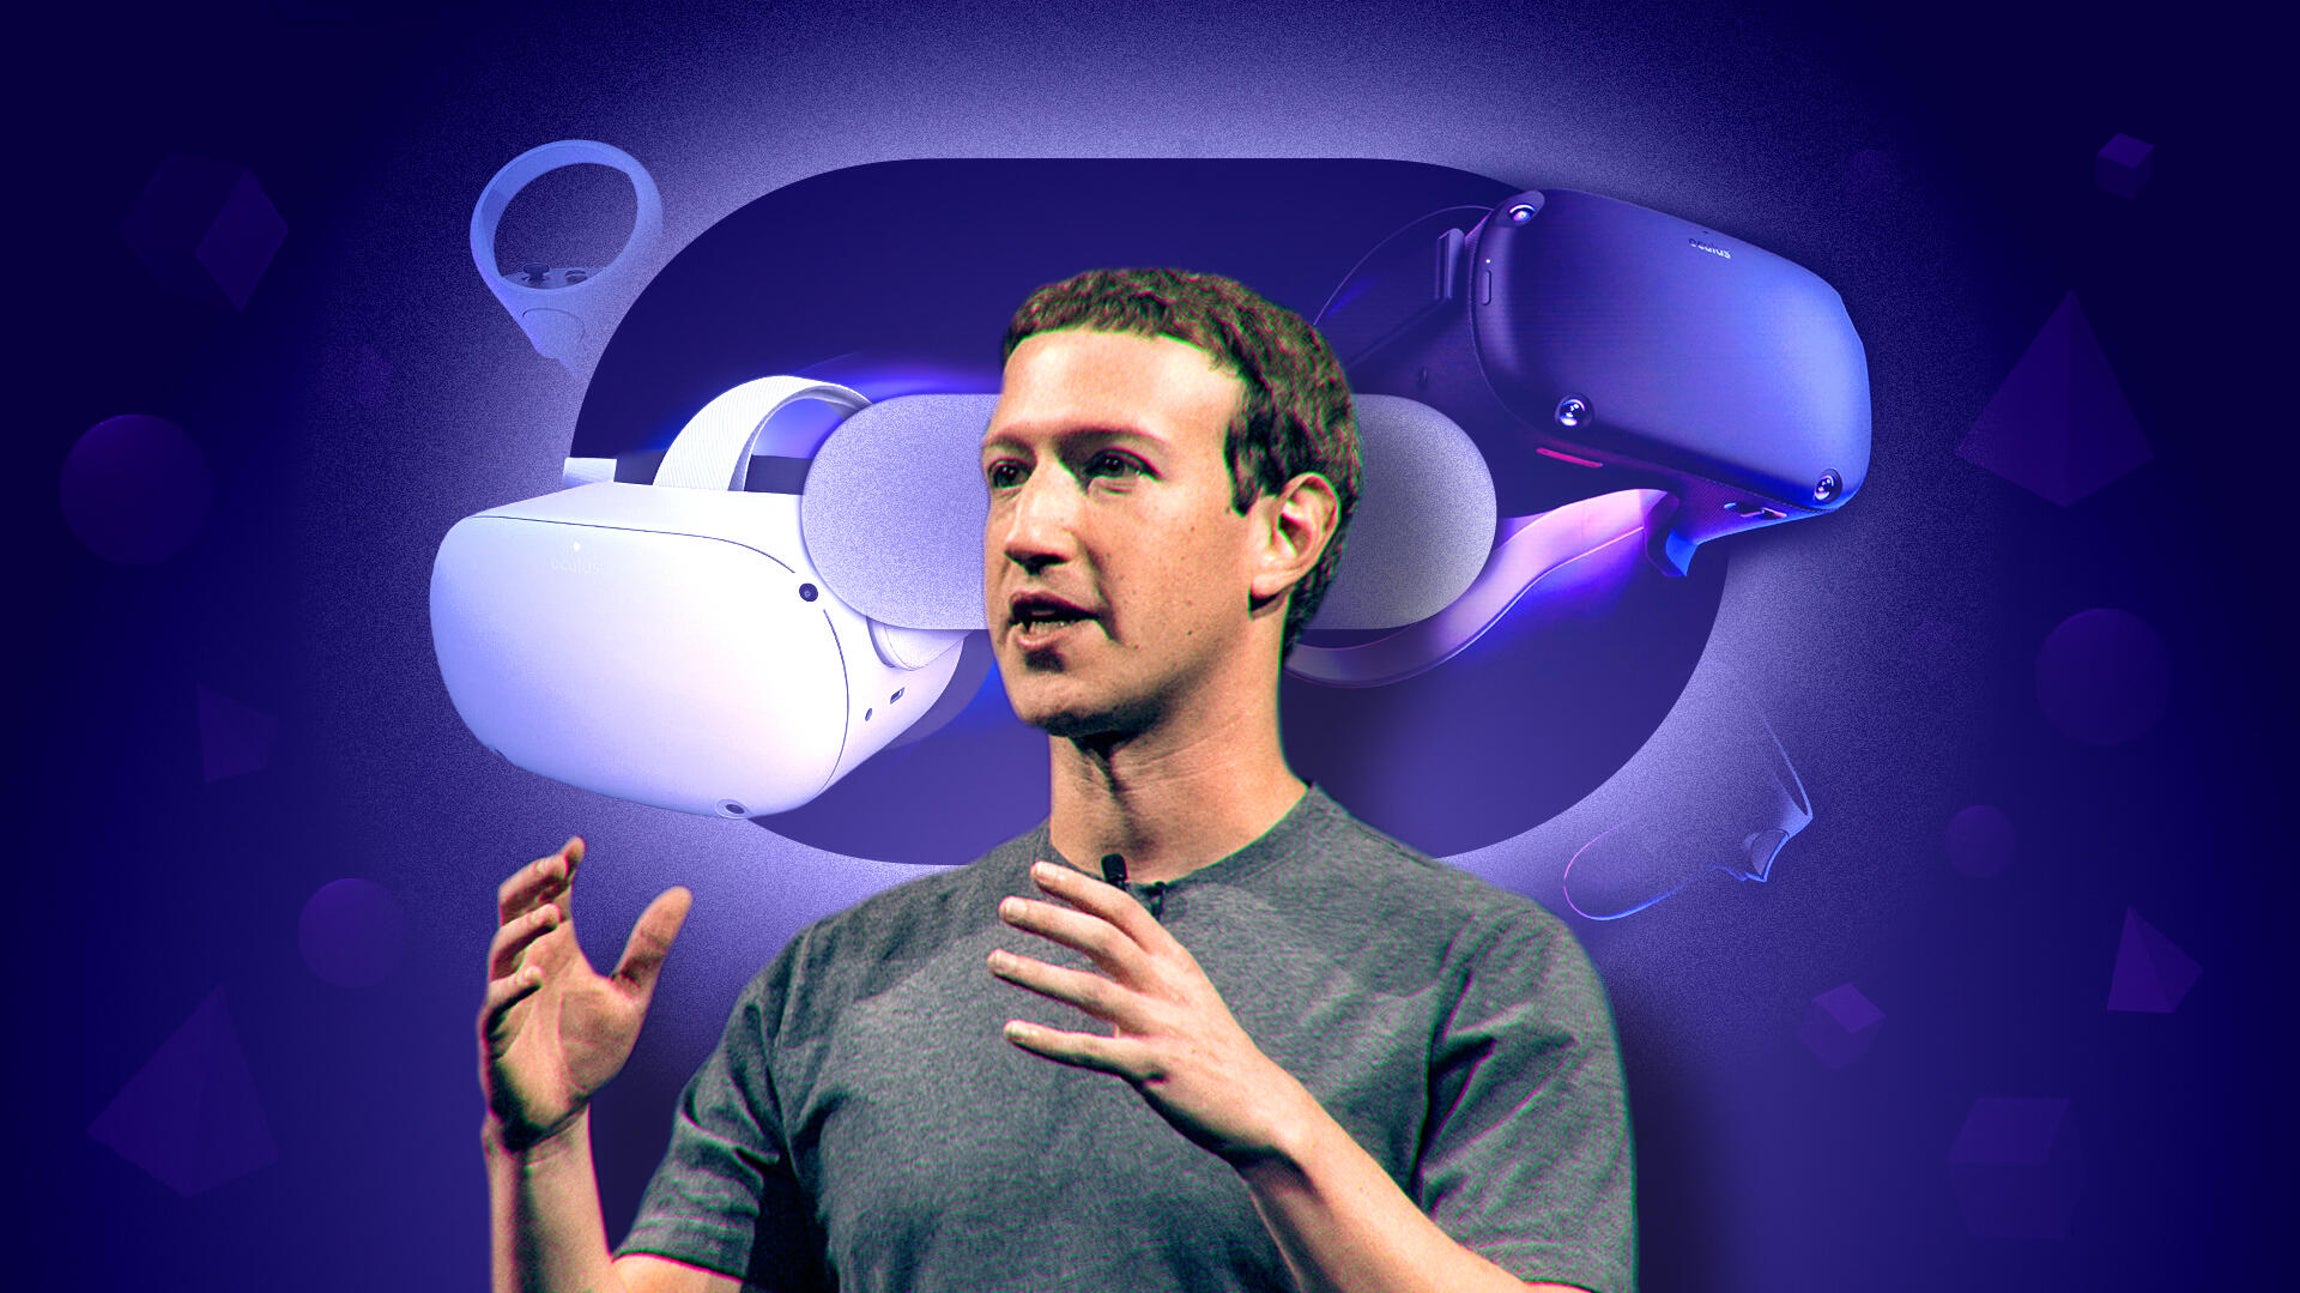 ViMoney - Metaverse doanh nghiệp - Các công ty đang muốn xây dựng lĩnh vực ảo để sao chép thế giới thực - Mark Zuckerberg và Meta